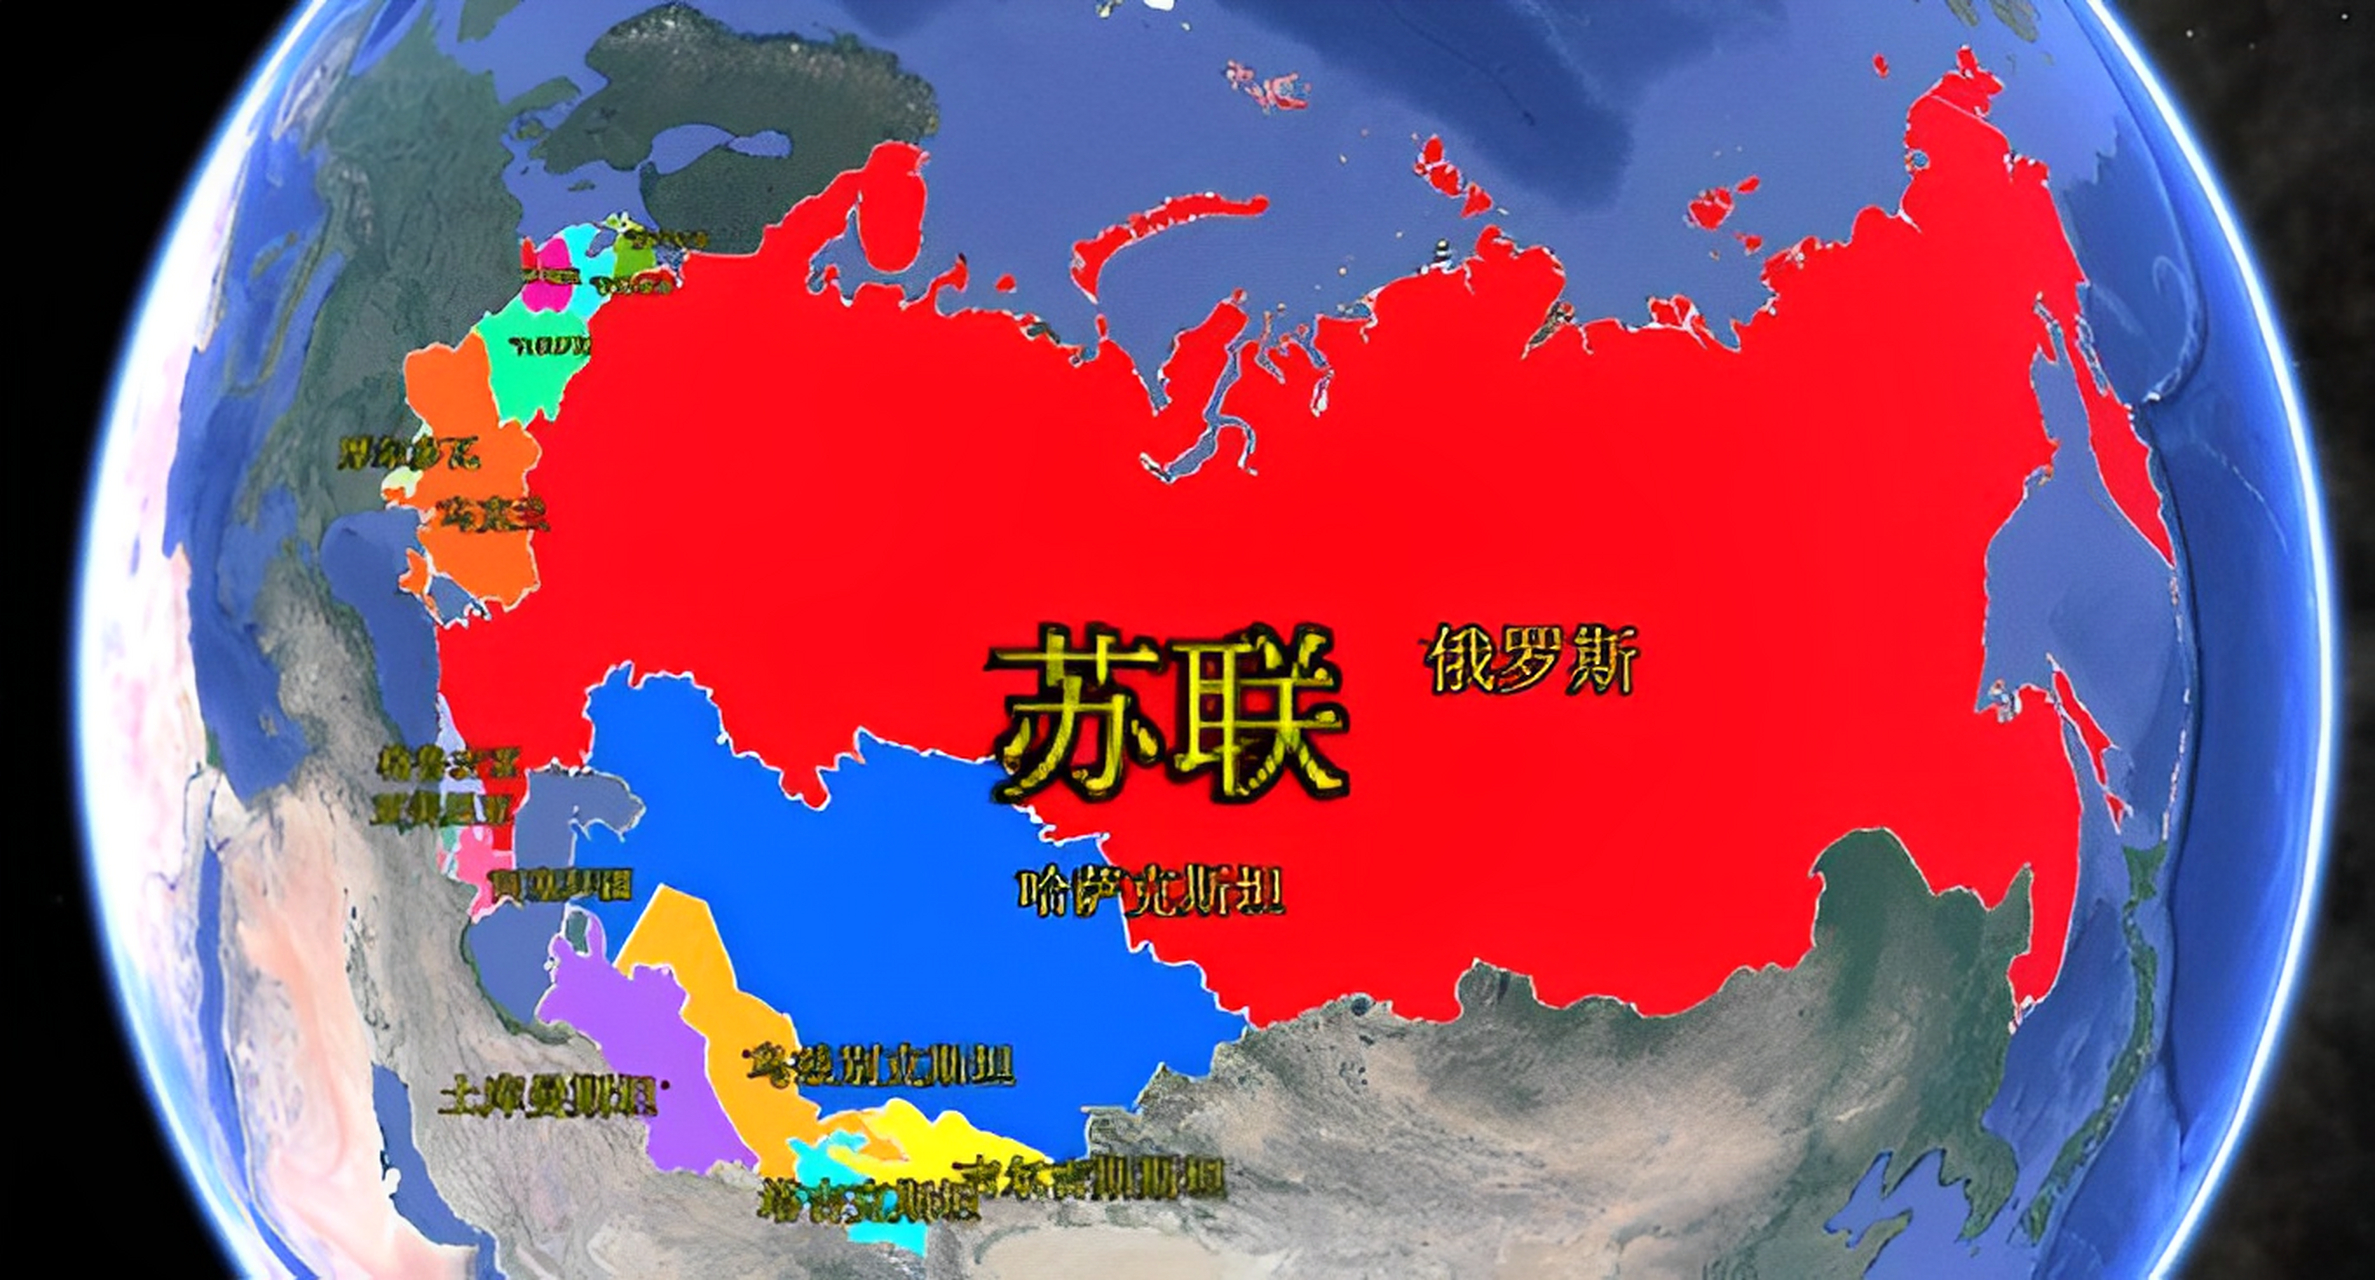 第二张是最大的苏联山地图!陆地面积达2240万平方公里!